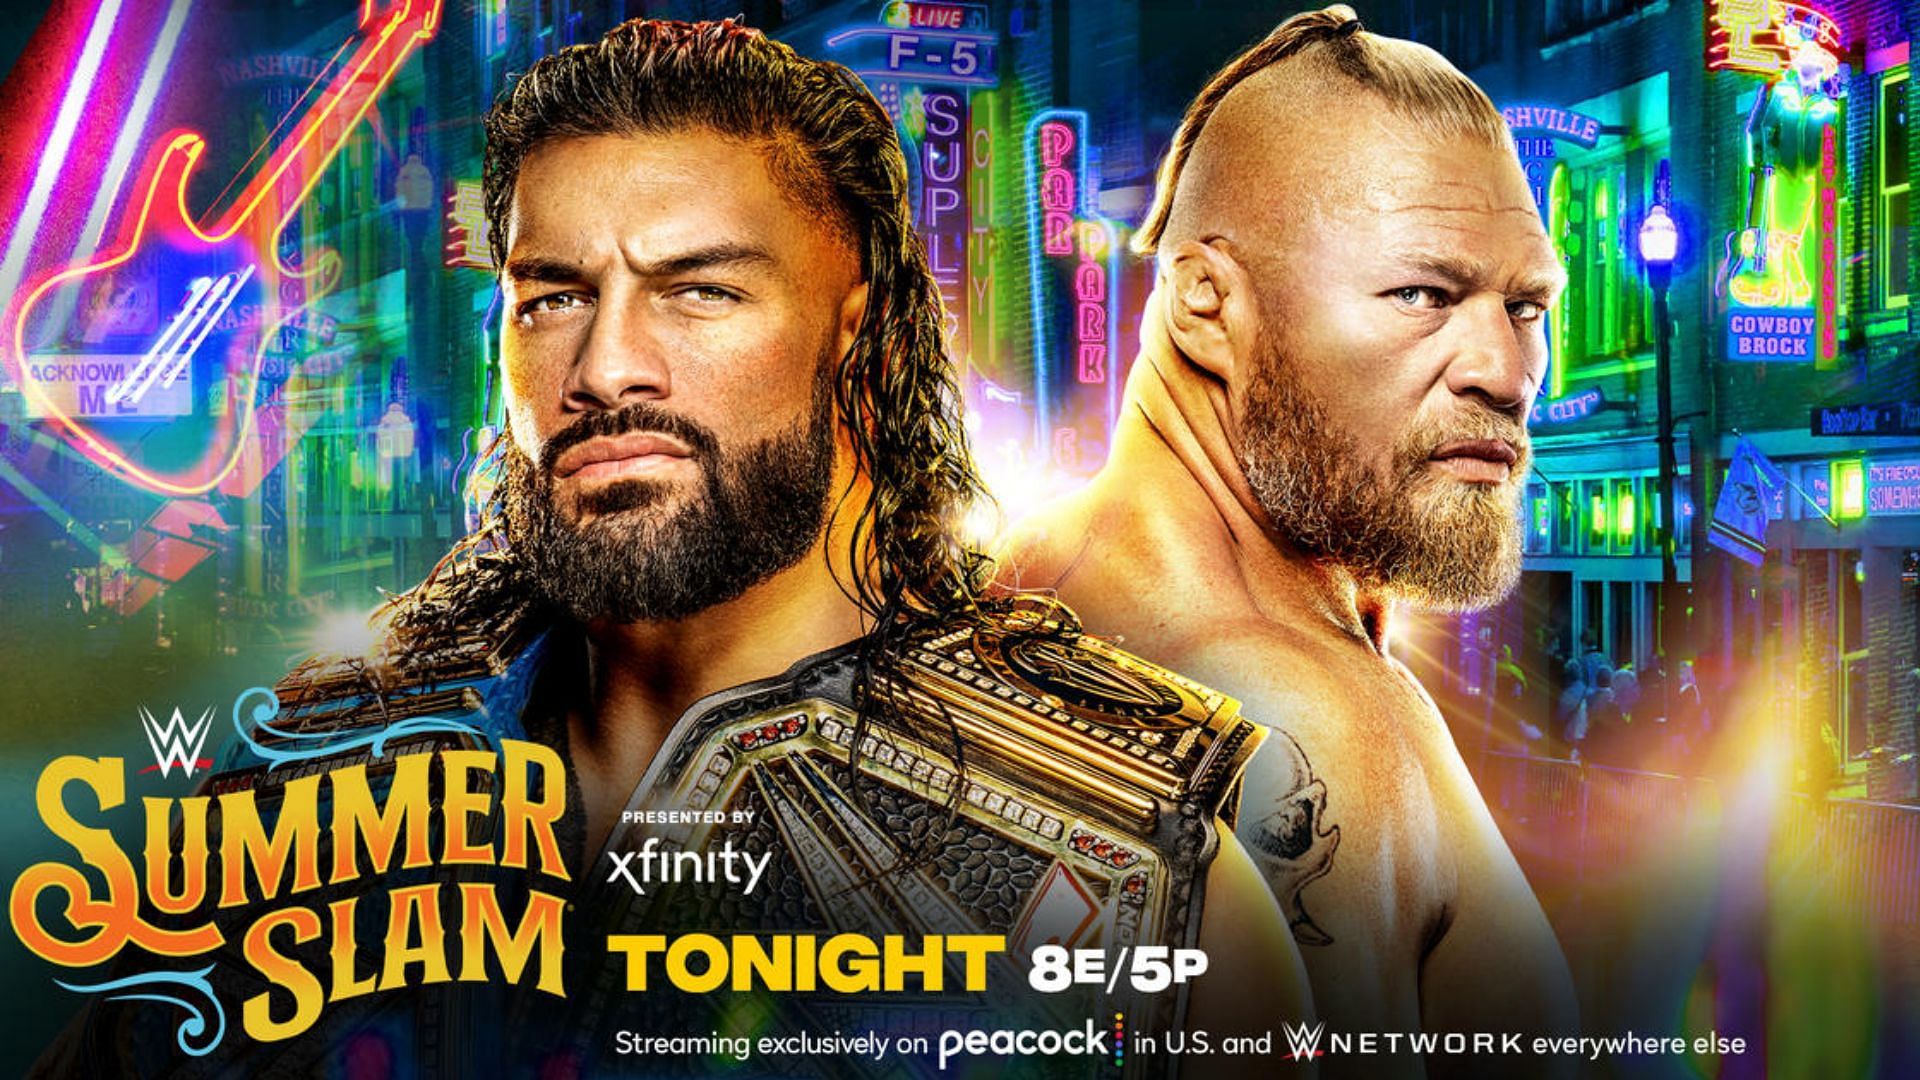 Roman Reigns will battle Brock Lesnar at SummerSlam 2022